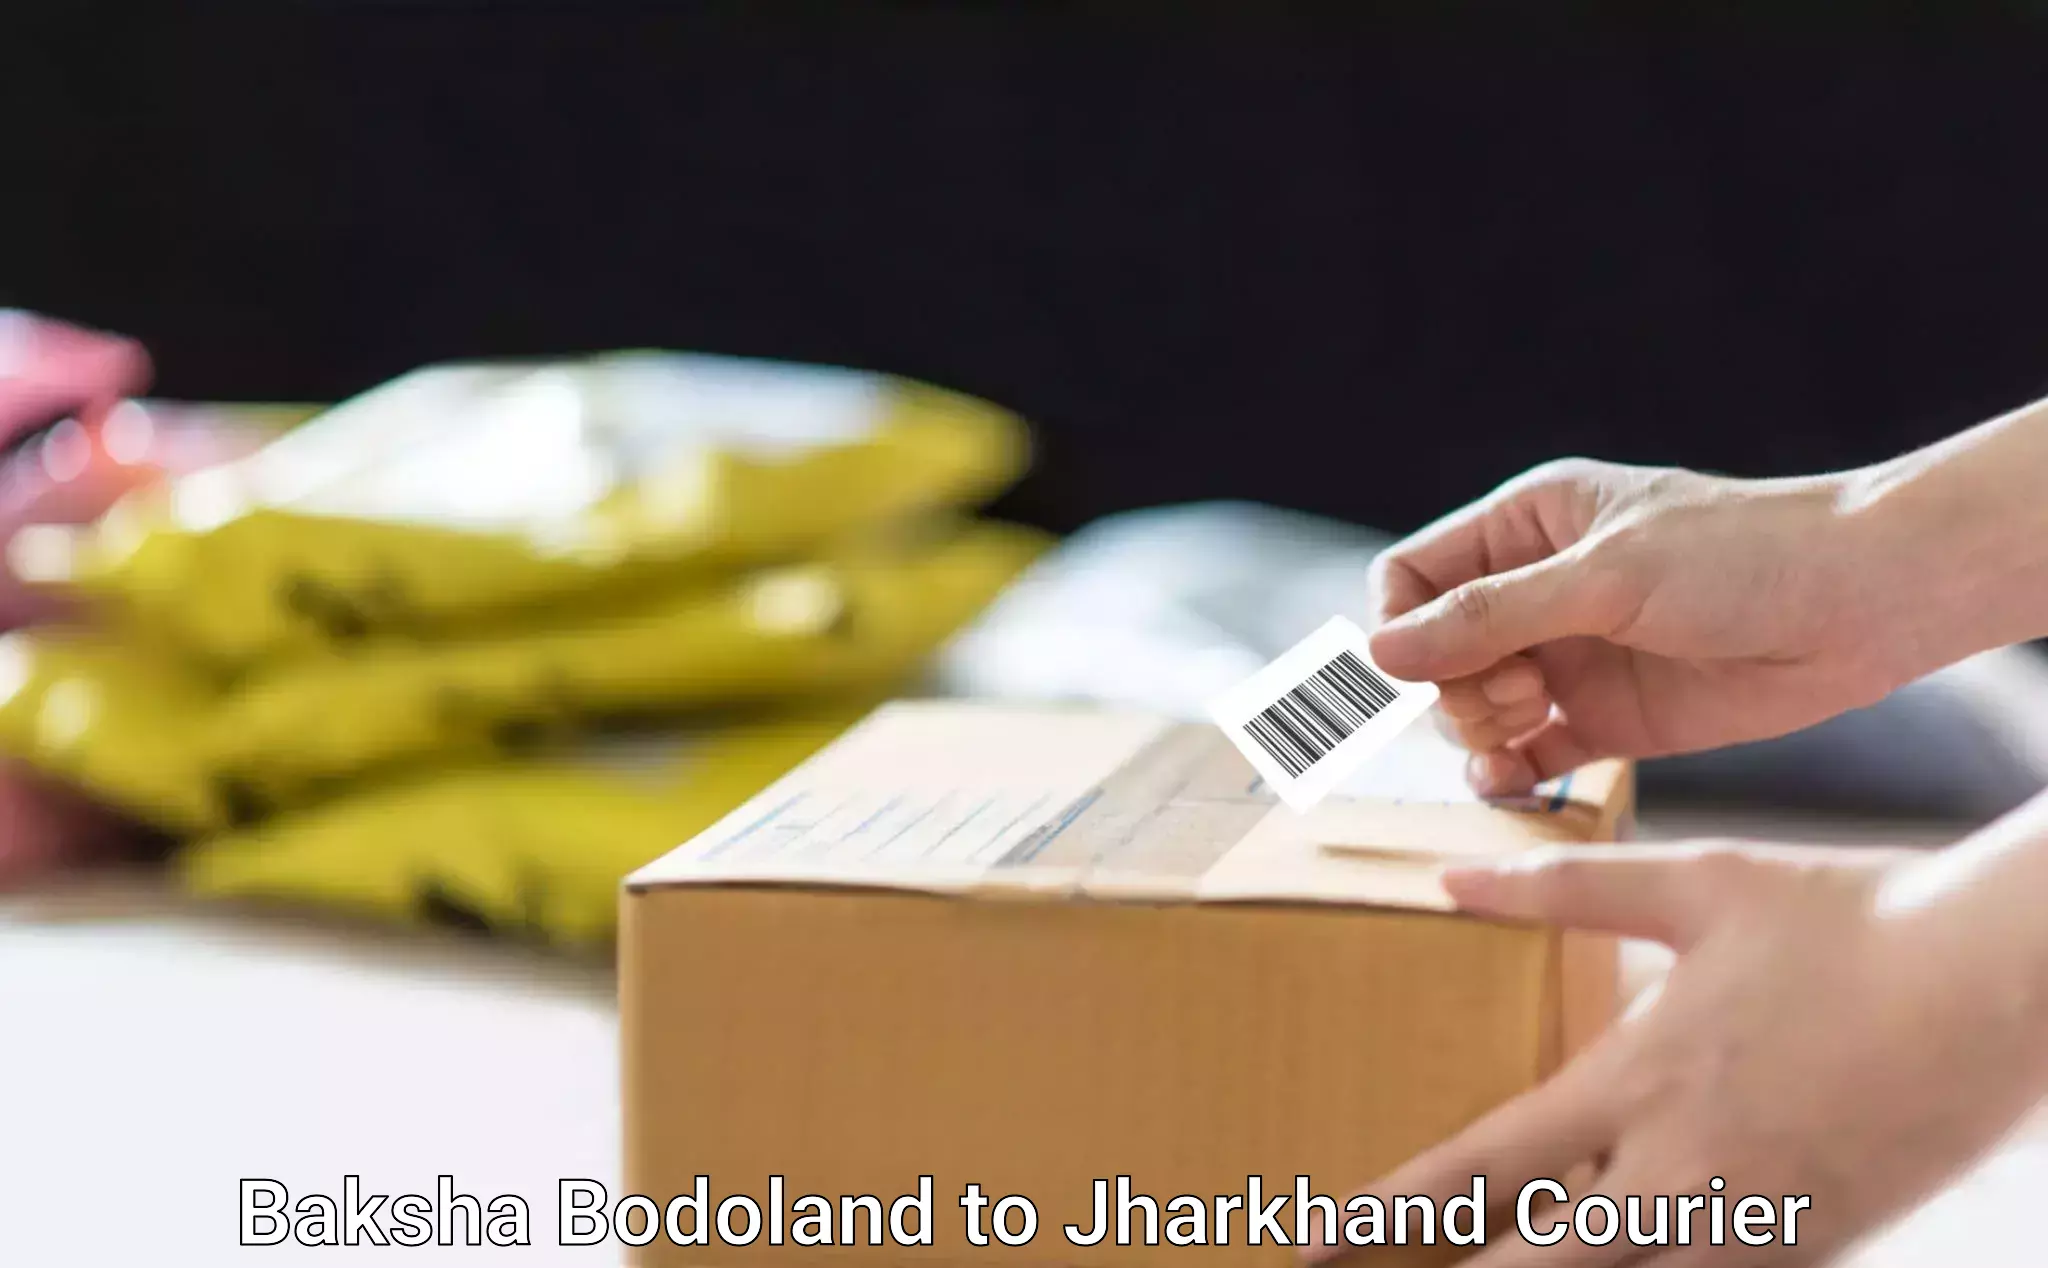 Next-generation courier services Baksha Bodoland to Govindpur